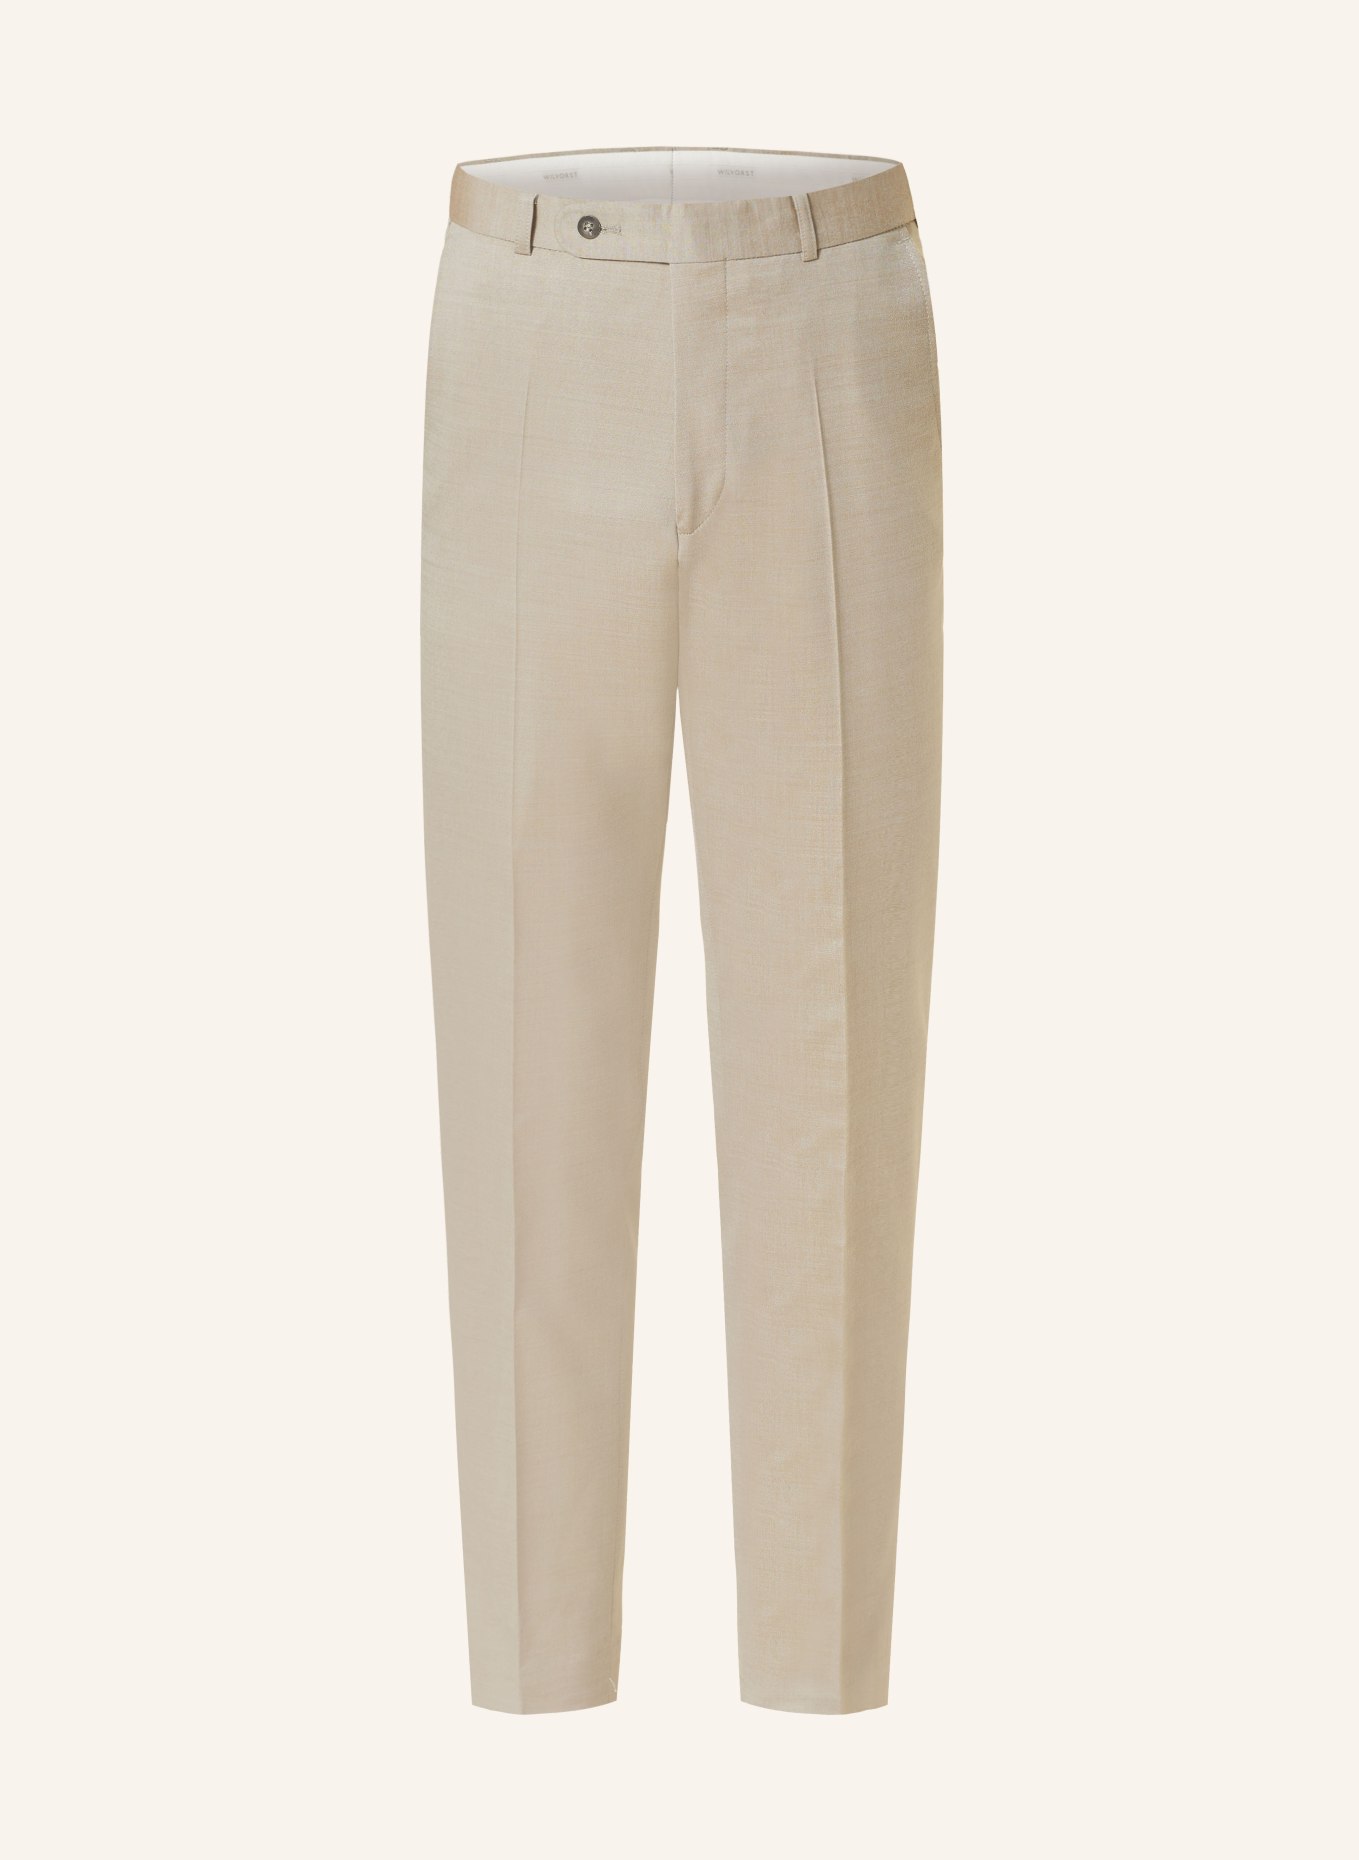 WILVORST Anzughose Extra Slim Fit, Farbe: 068 Cappuccino (Bild 1)